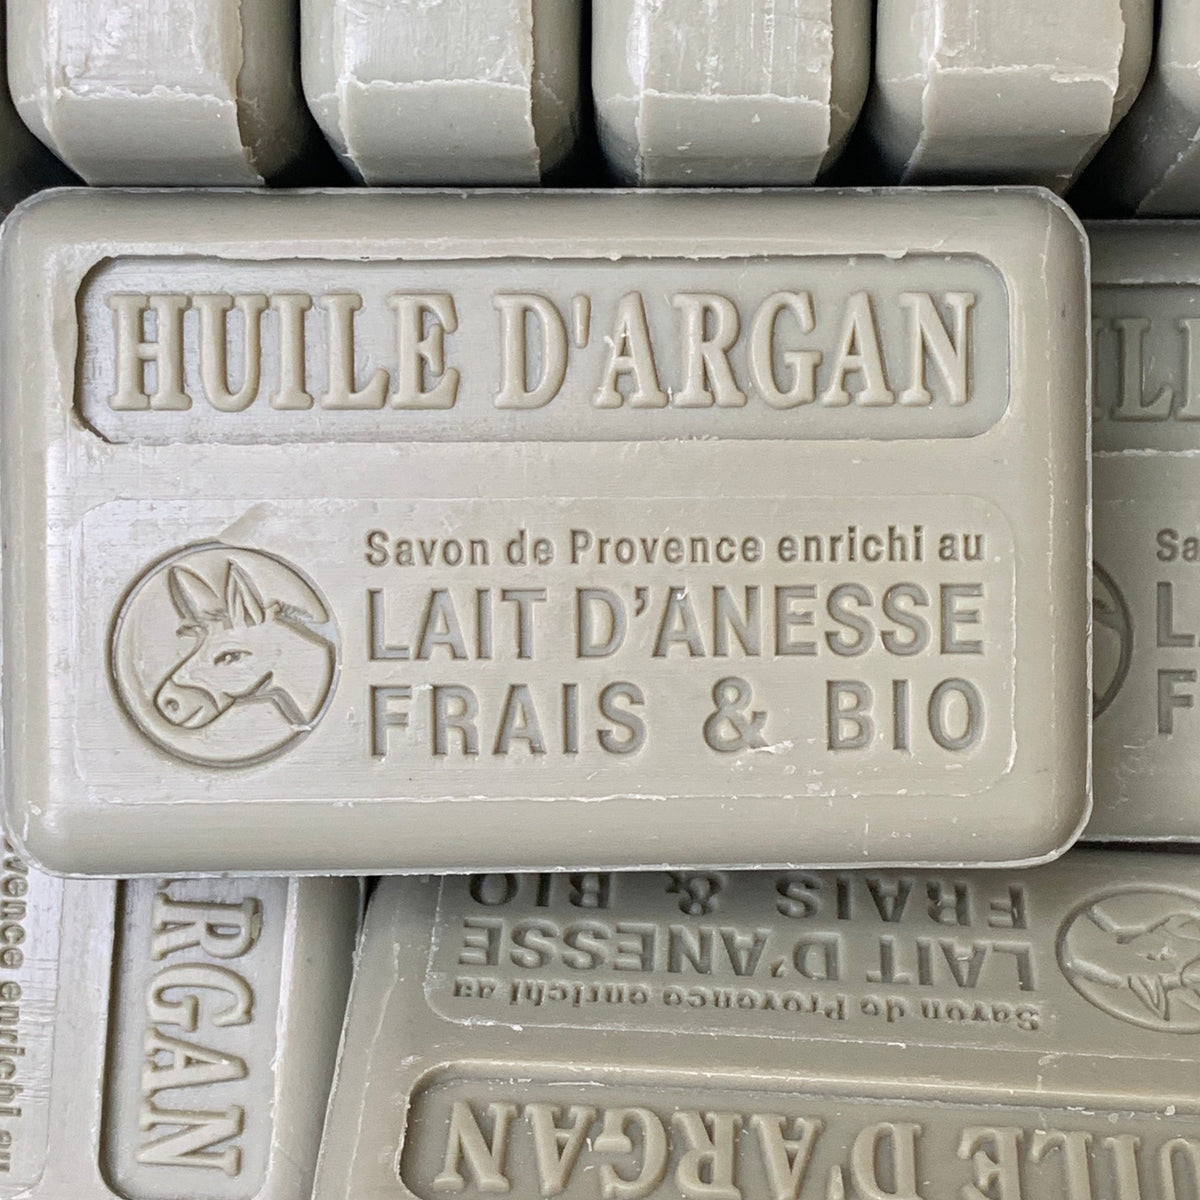 french argan oil lait d&#39;anesse soap 